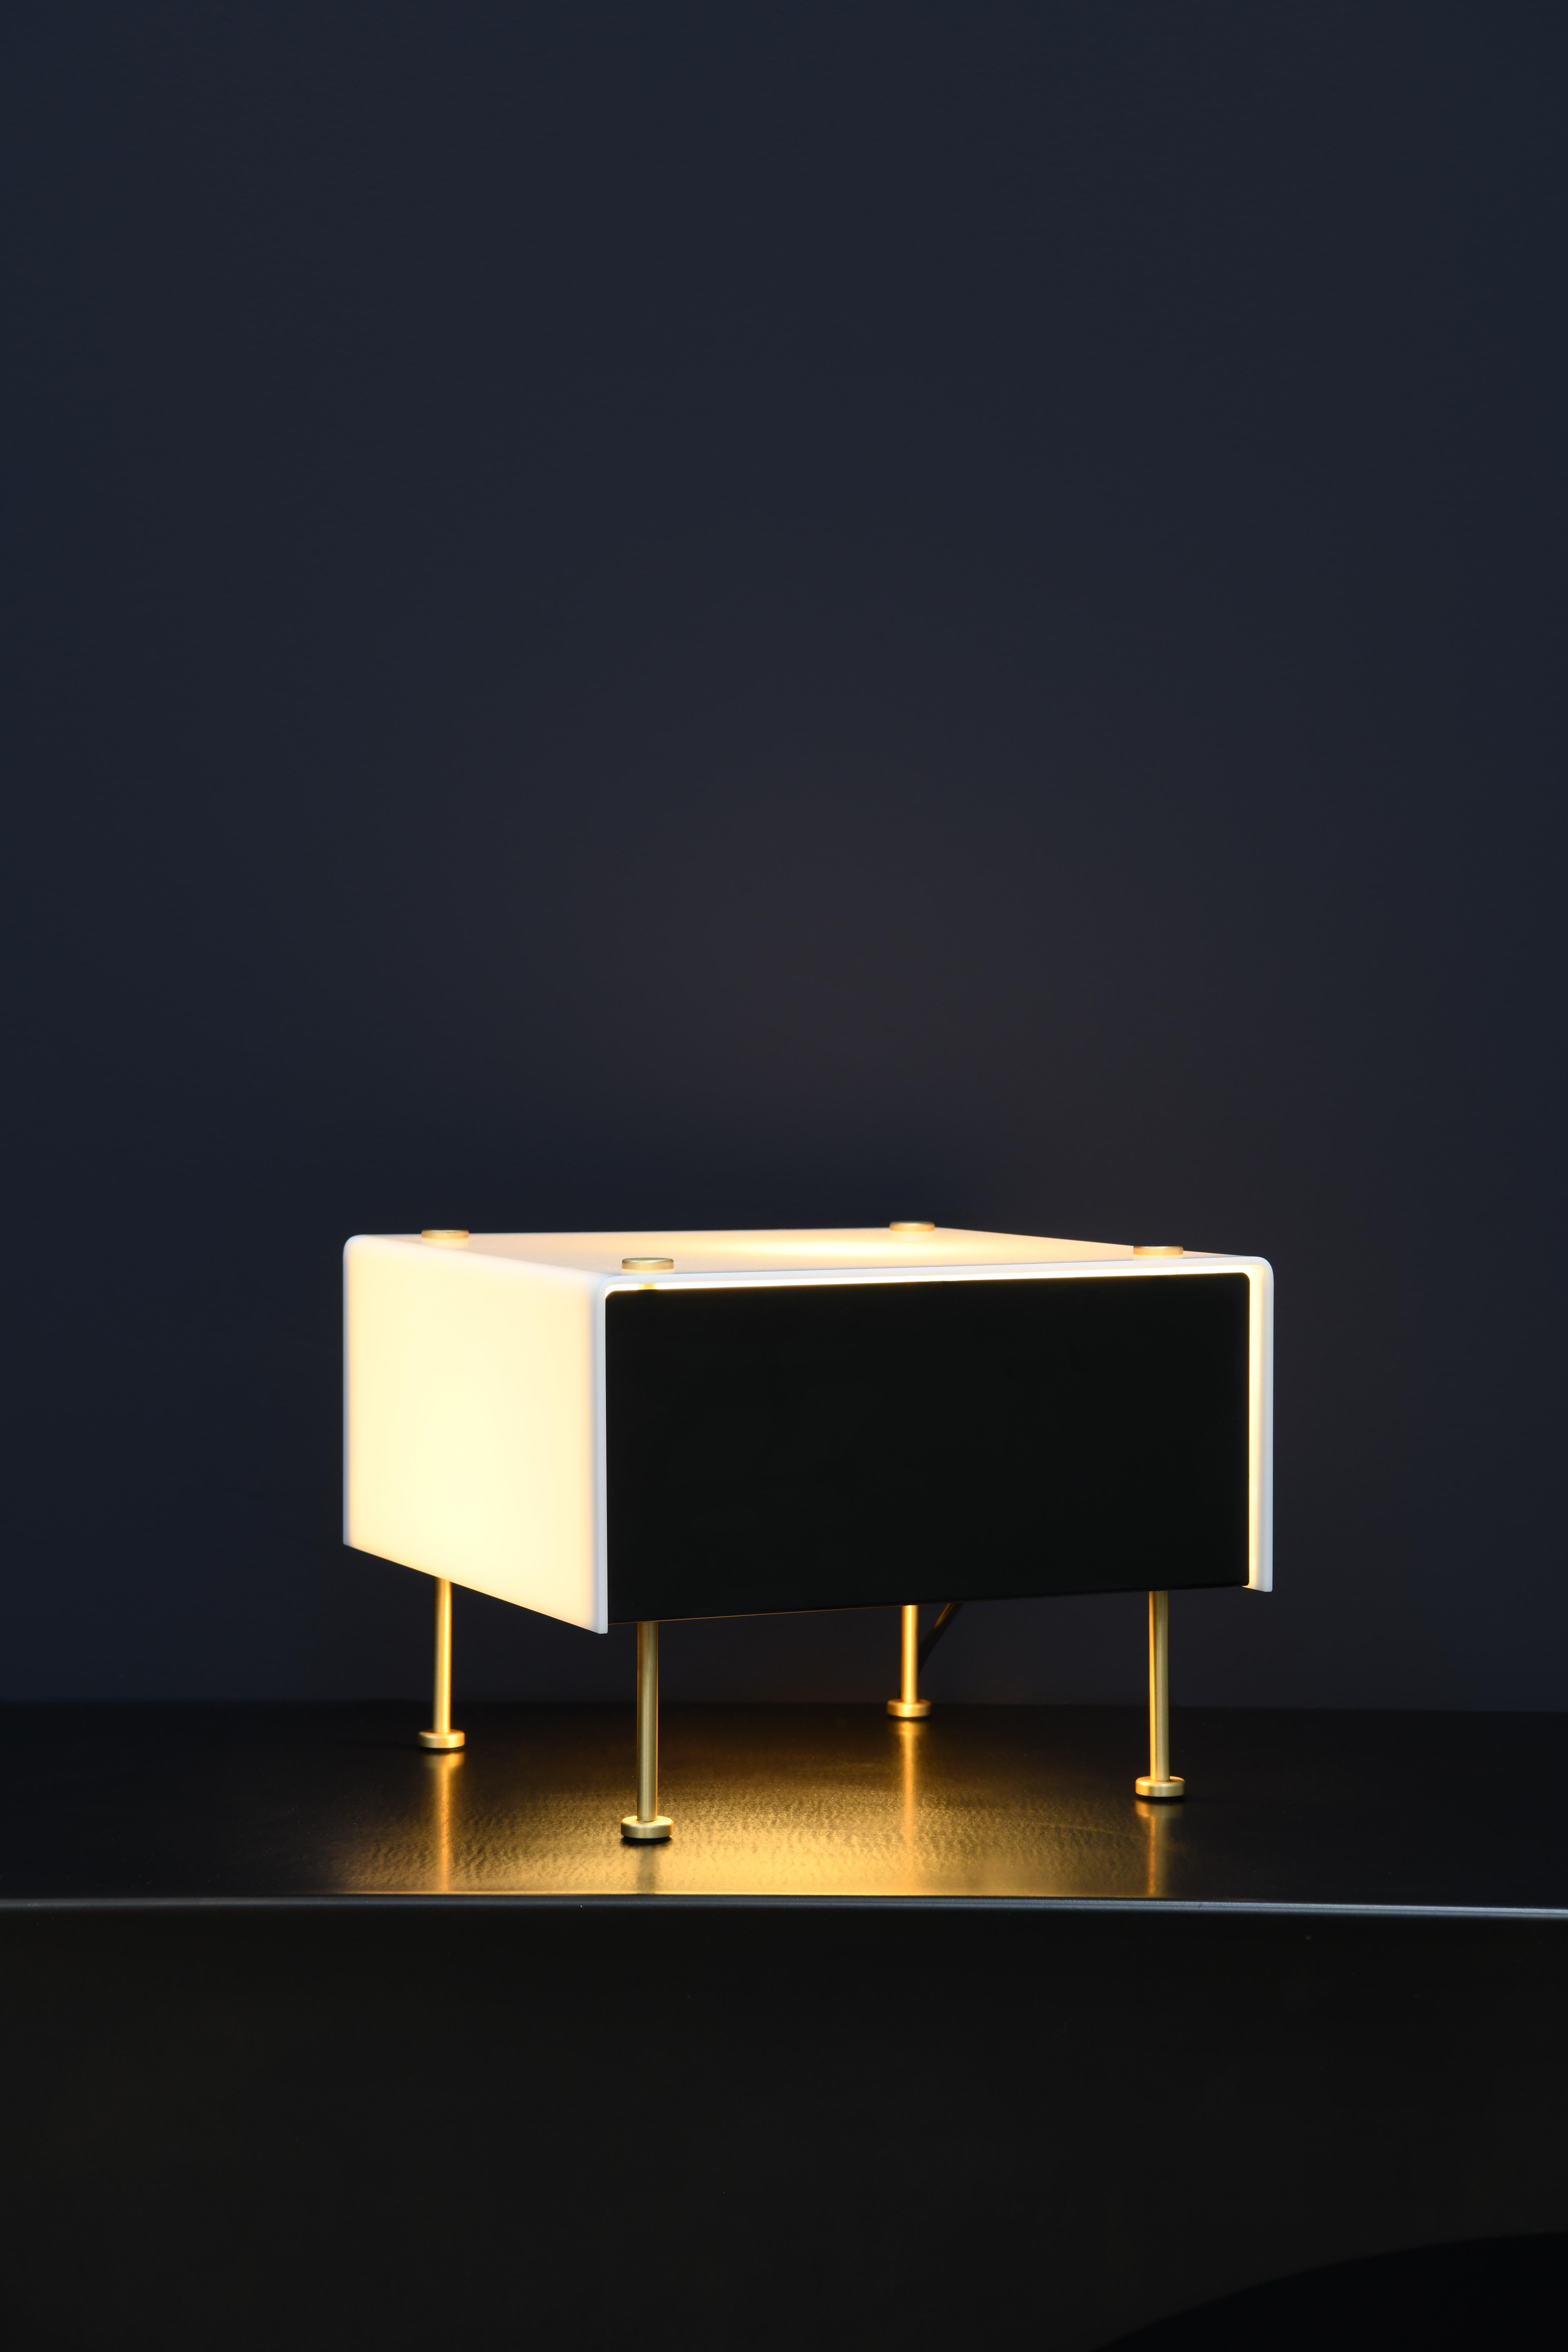 Lampe de table 'G60' de Pierre Guariche pour Sammode Studio. 

Conçu à l'origine par Pierre Guariche, ce luminaire emblématique a fait l'objet d'une réédition autorisée par Sammode Studio en France. Il reprend les mêmes techniques de fabrication à